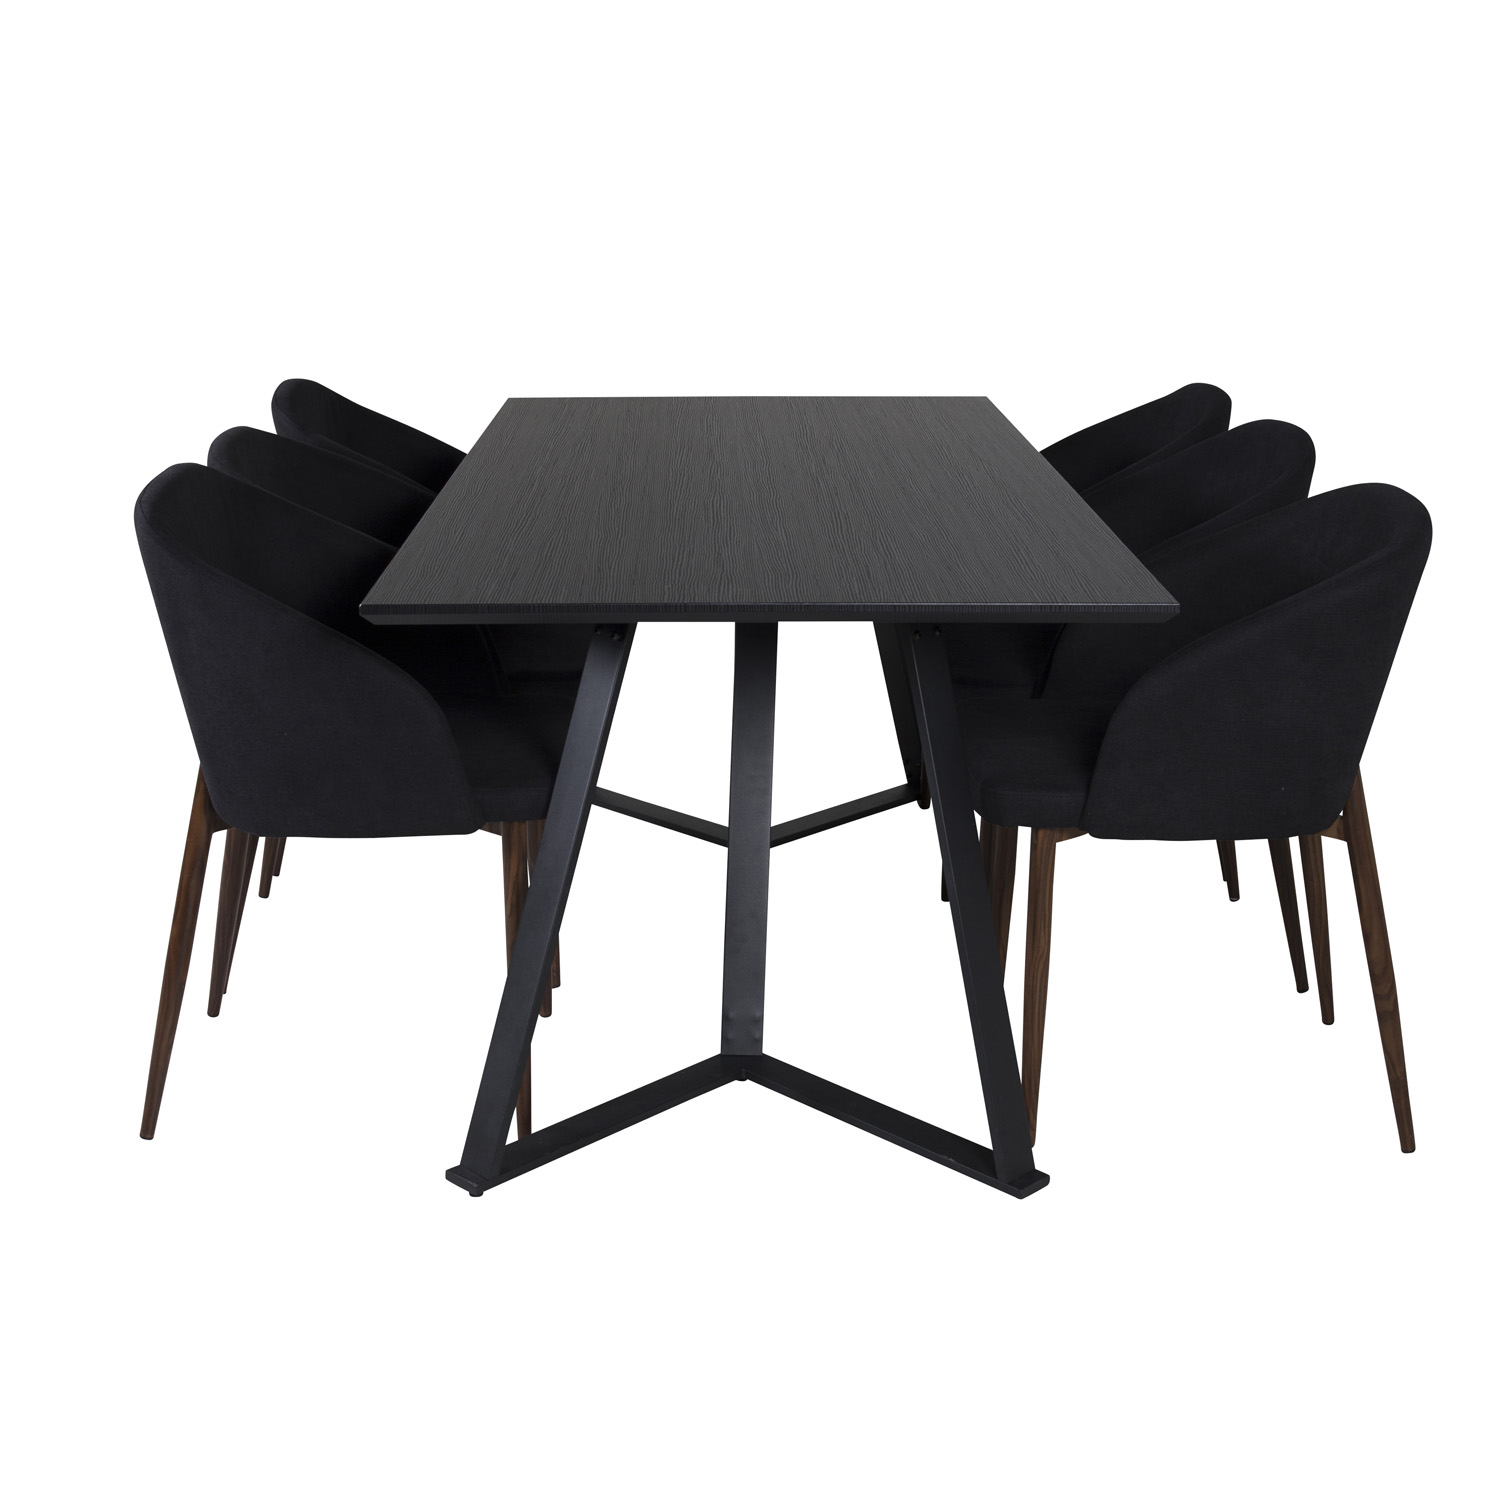 VENTURE DESIGN Marina spisebordssæt, m. 6 stole - sort finer/sort metal og sort stof/folie metal